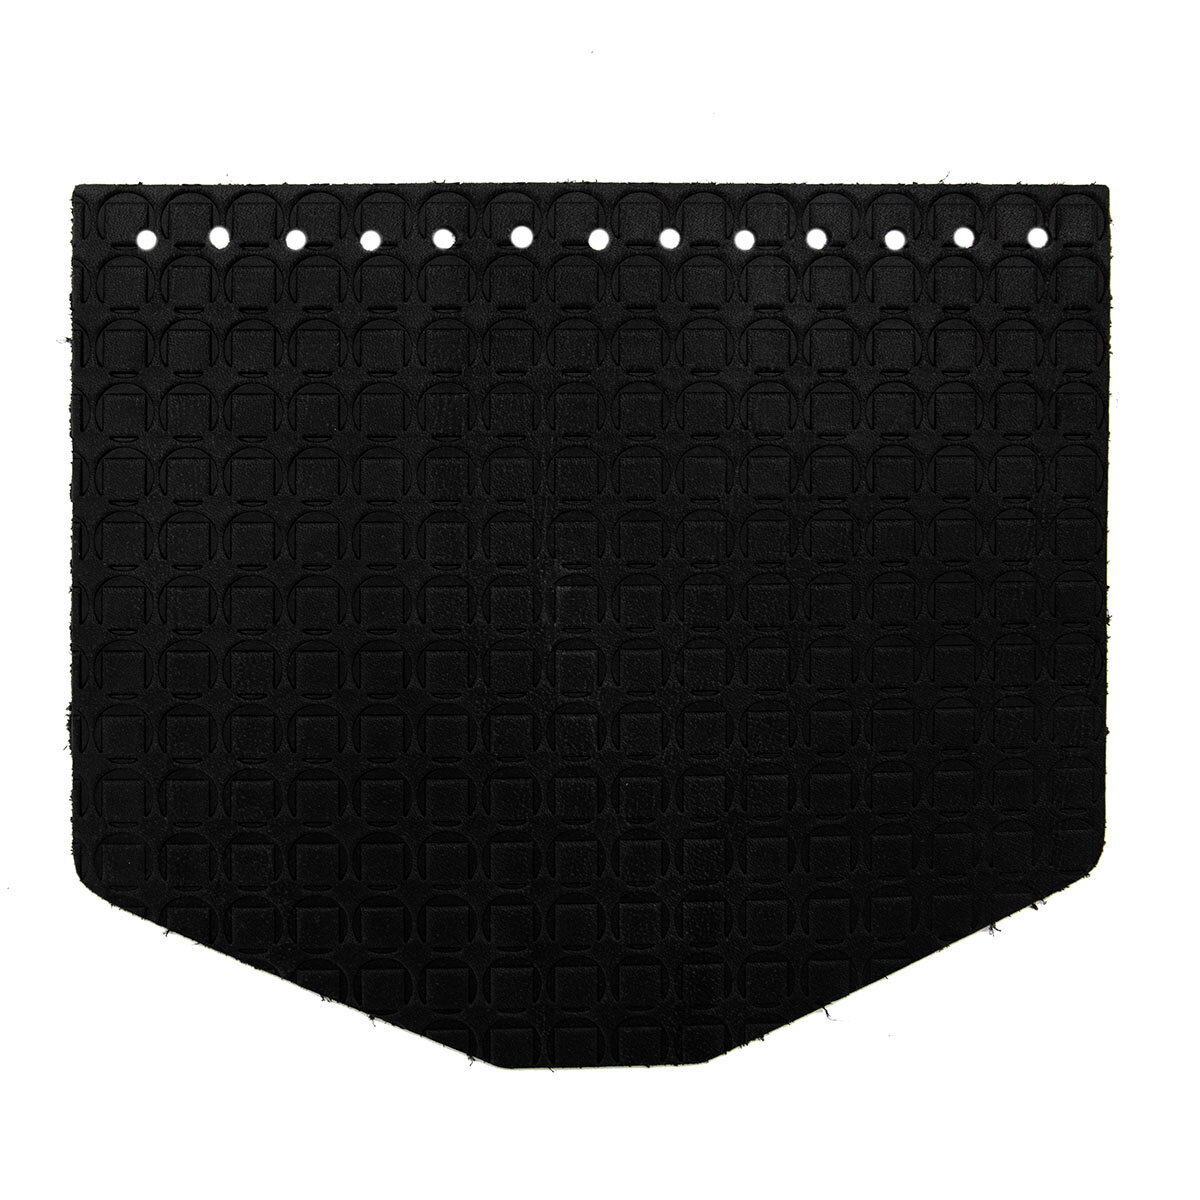 Крышечка для сумки Подкова, 19,4см*16,5см, дизайн №2030, 100% кожа (черный)